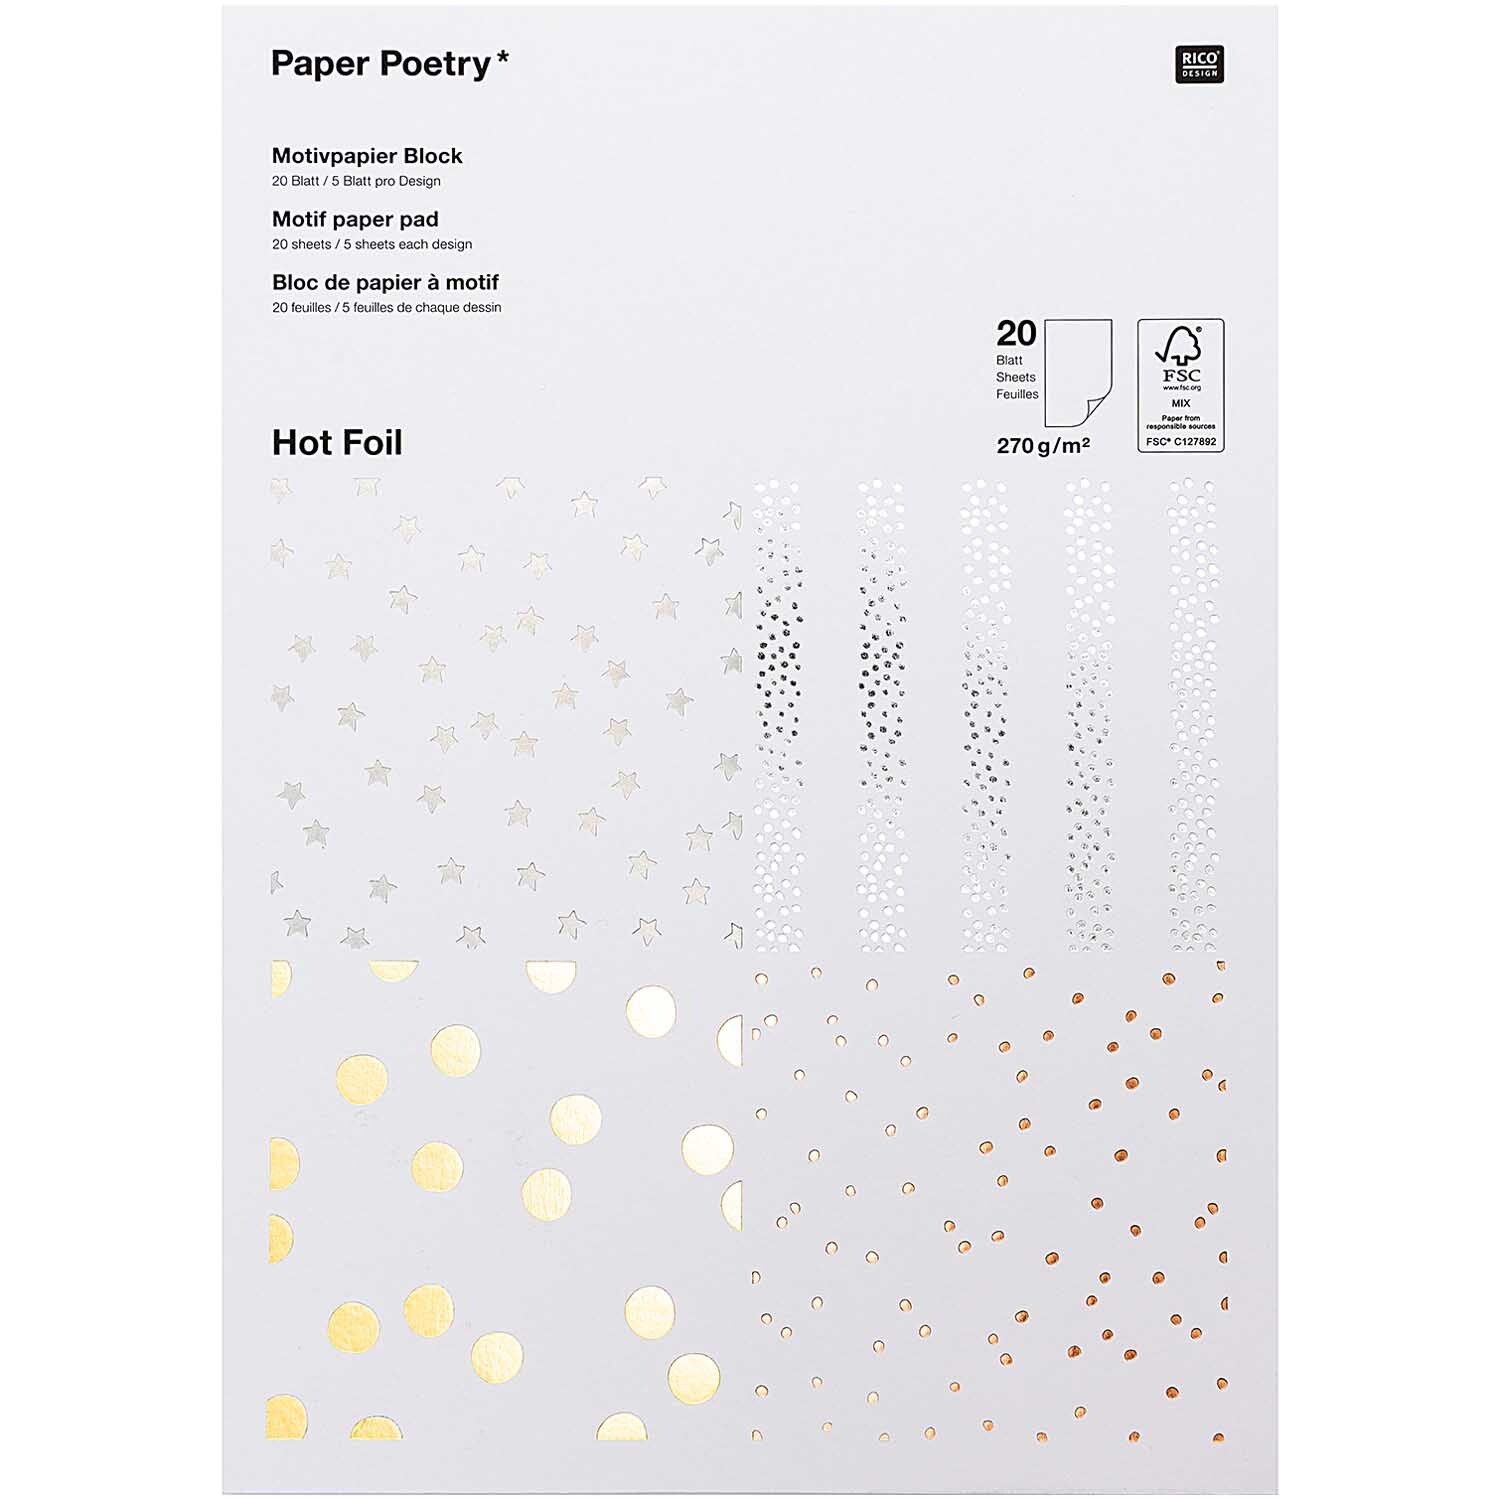 Paper Poetry Motivpapier Block Punkte 270g/m² 20 Blatt Hot Foil